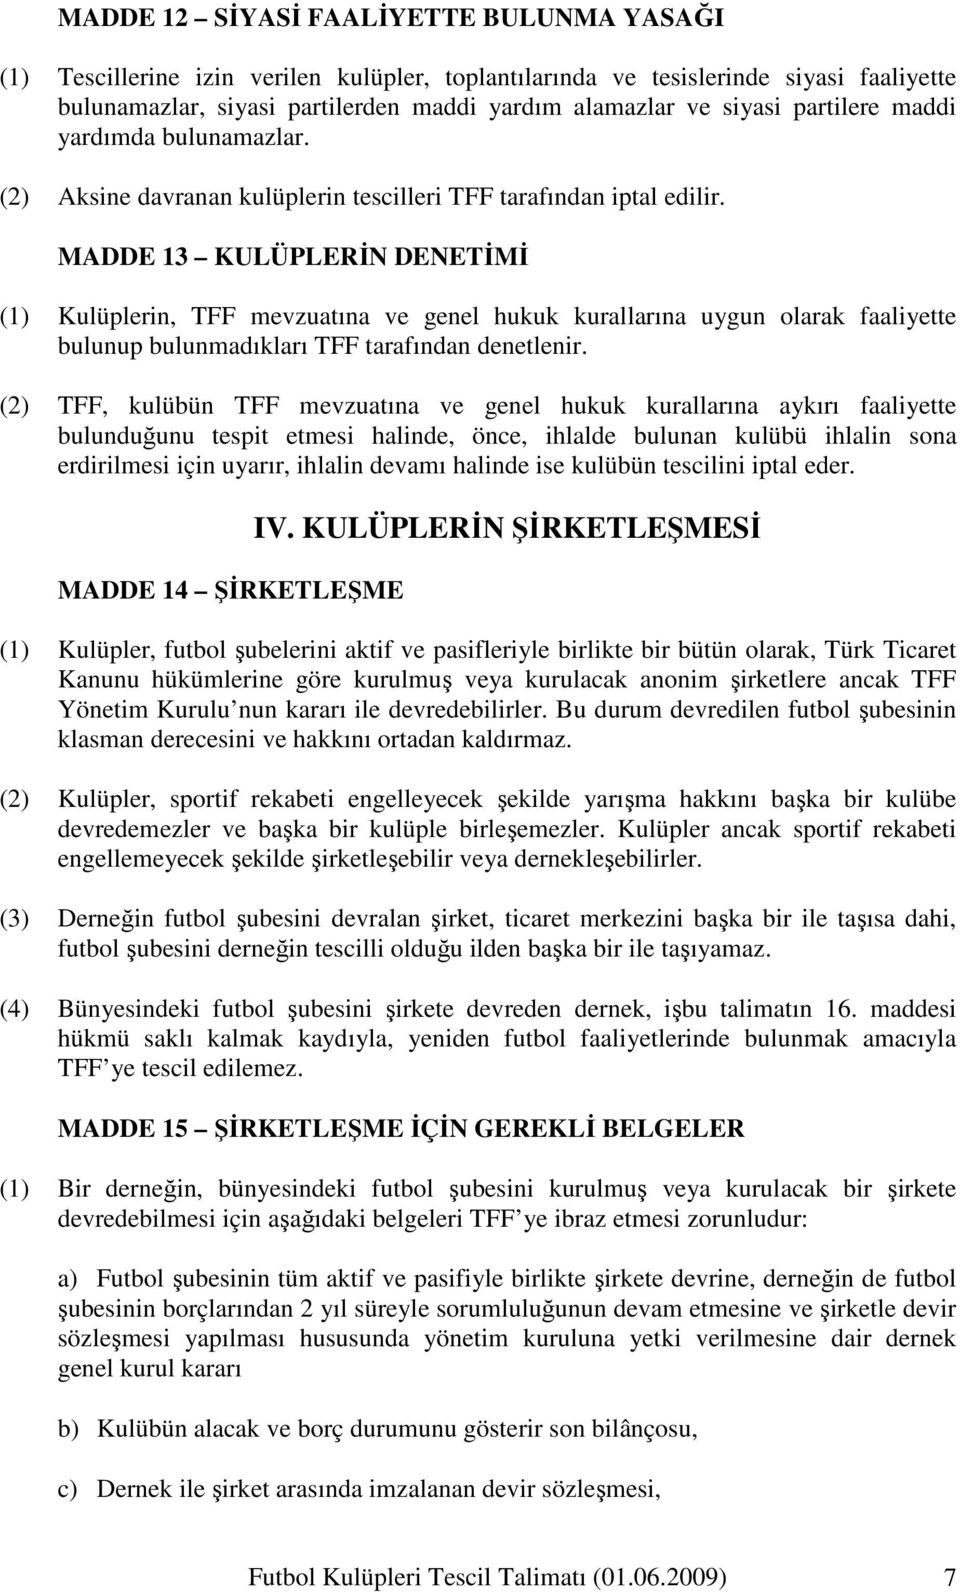 MADDE 13 KULÜPLERĐN DENETĐMĐ (1) Kulüplerin, TFF mevzuatına ve genel hukuk kurallarına uygun olarak faaliyette bulunup bulunmadıkları TFF tarafından denetlenir.